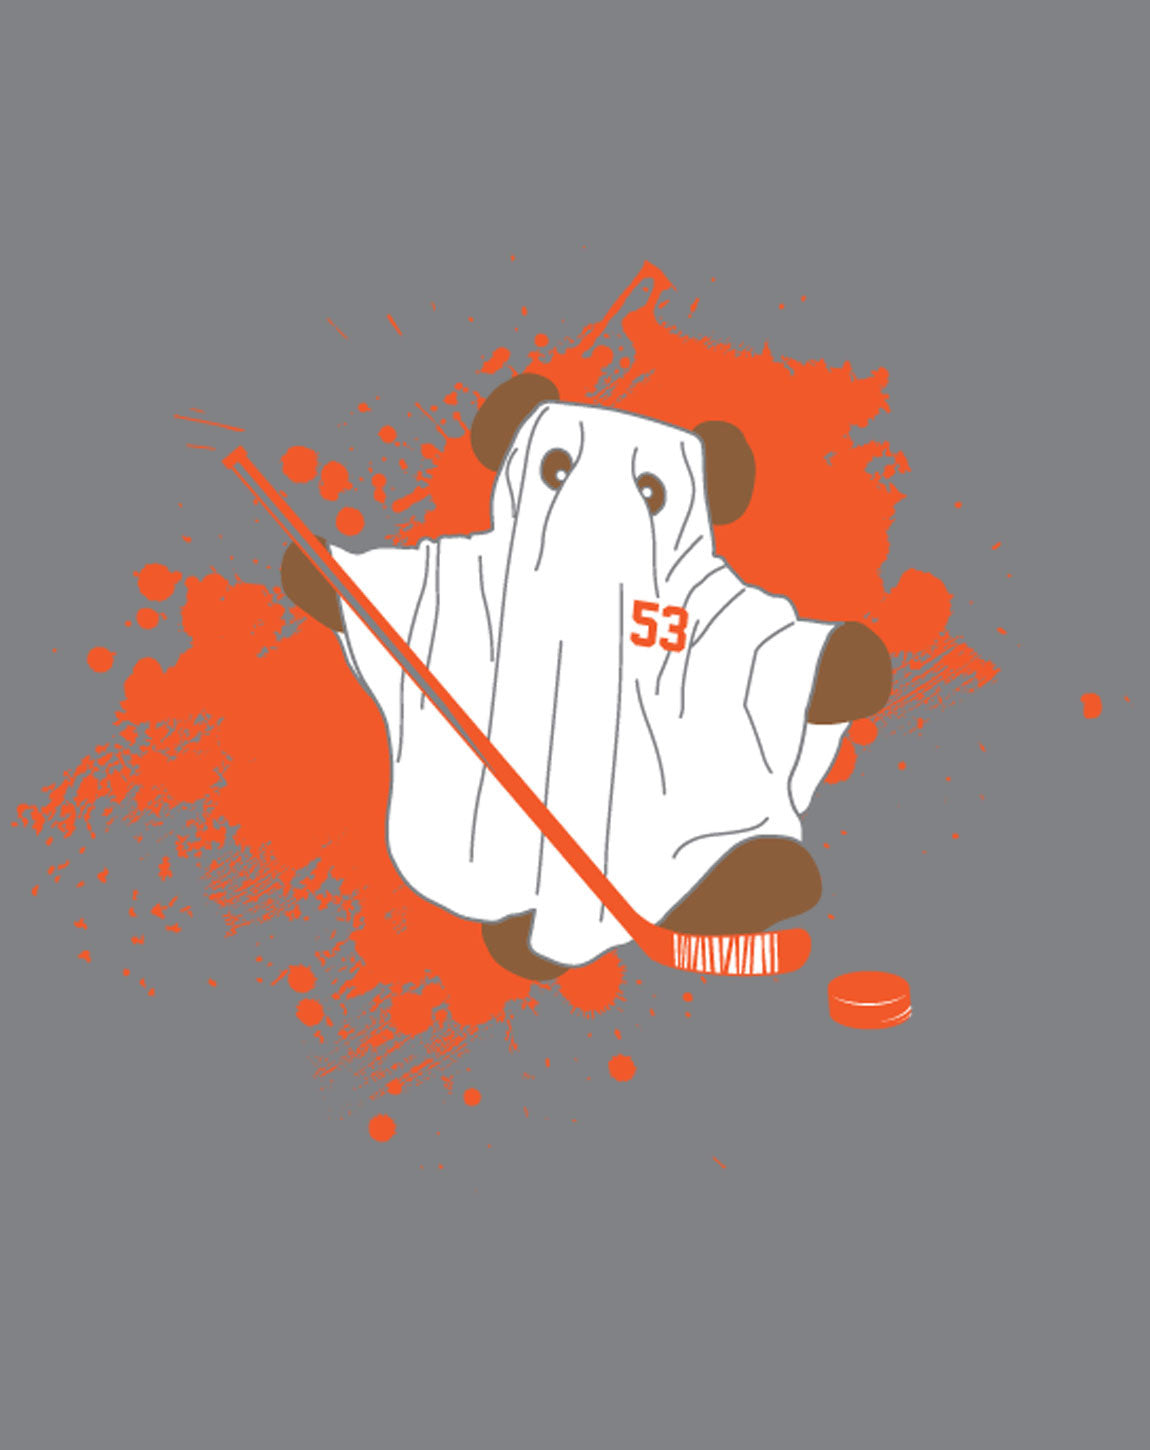 ghost bear flyers t shirt